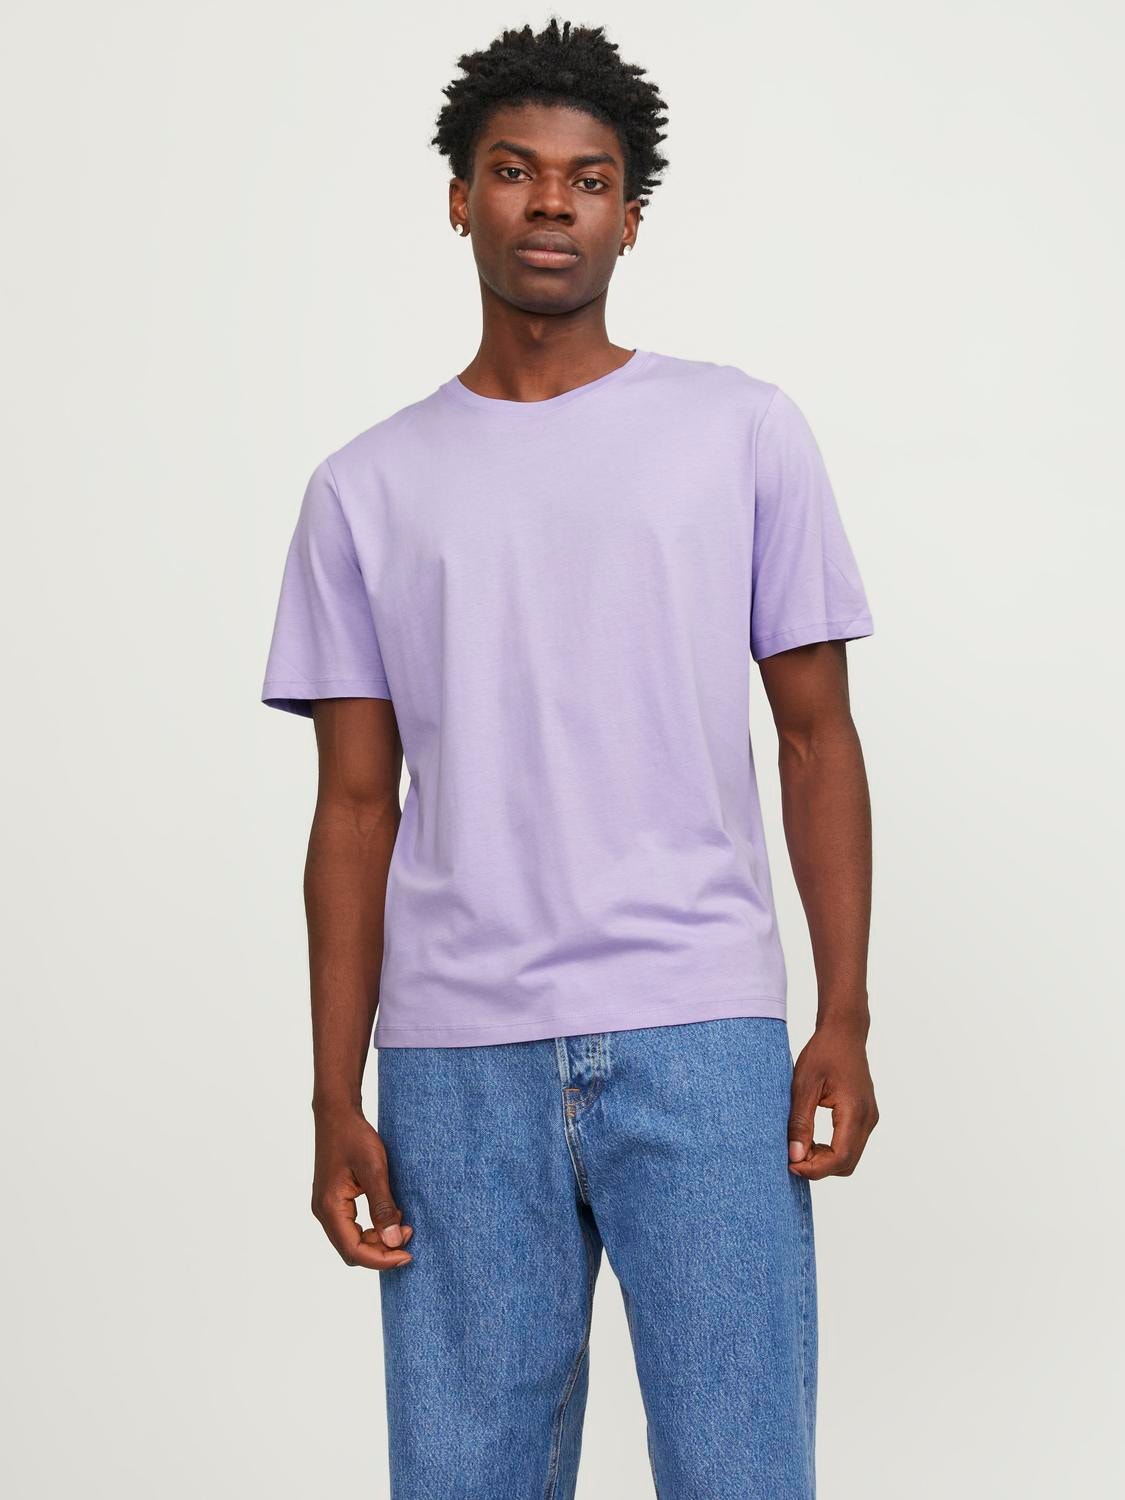 Jack & Jones Einfarbig Rundhals T-shirt -Purple Rose - 12156101